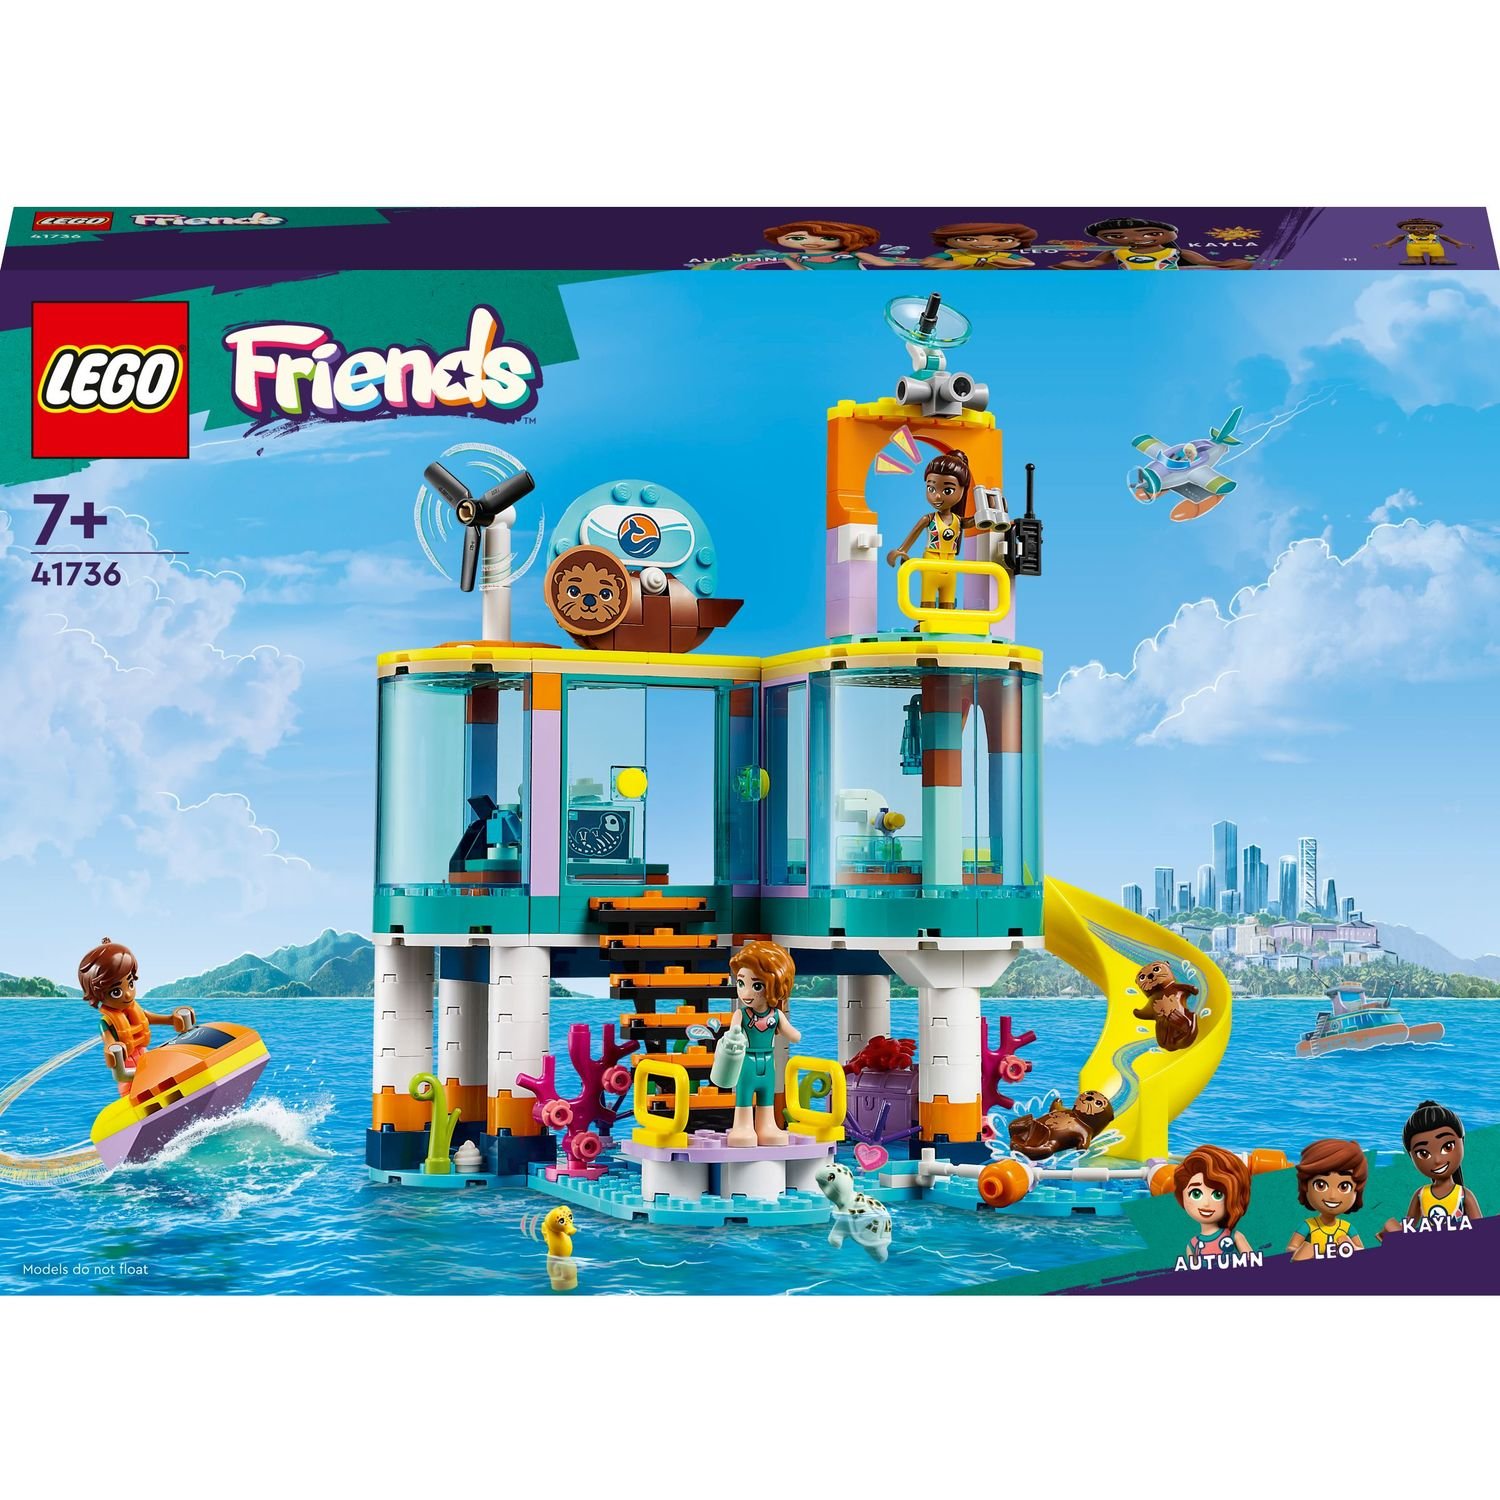 Конструктор LEGO Friends Морской спасательный центр, 376 деталей (41736) - фото 1